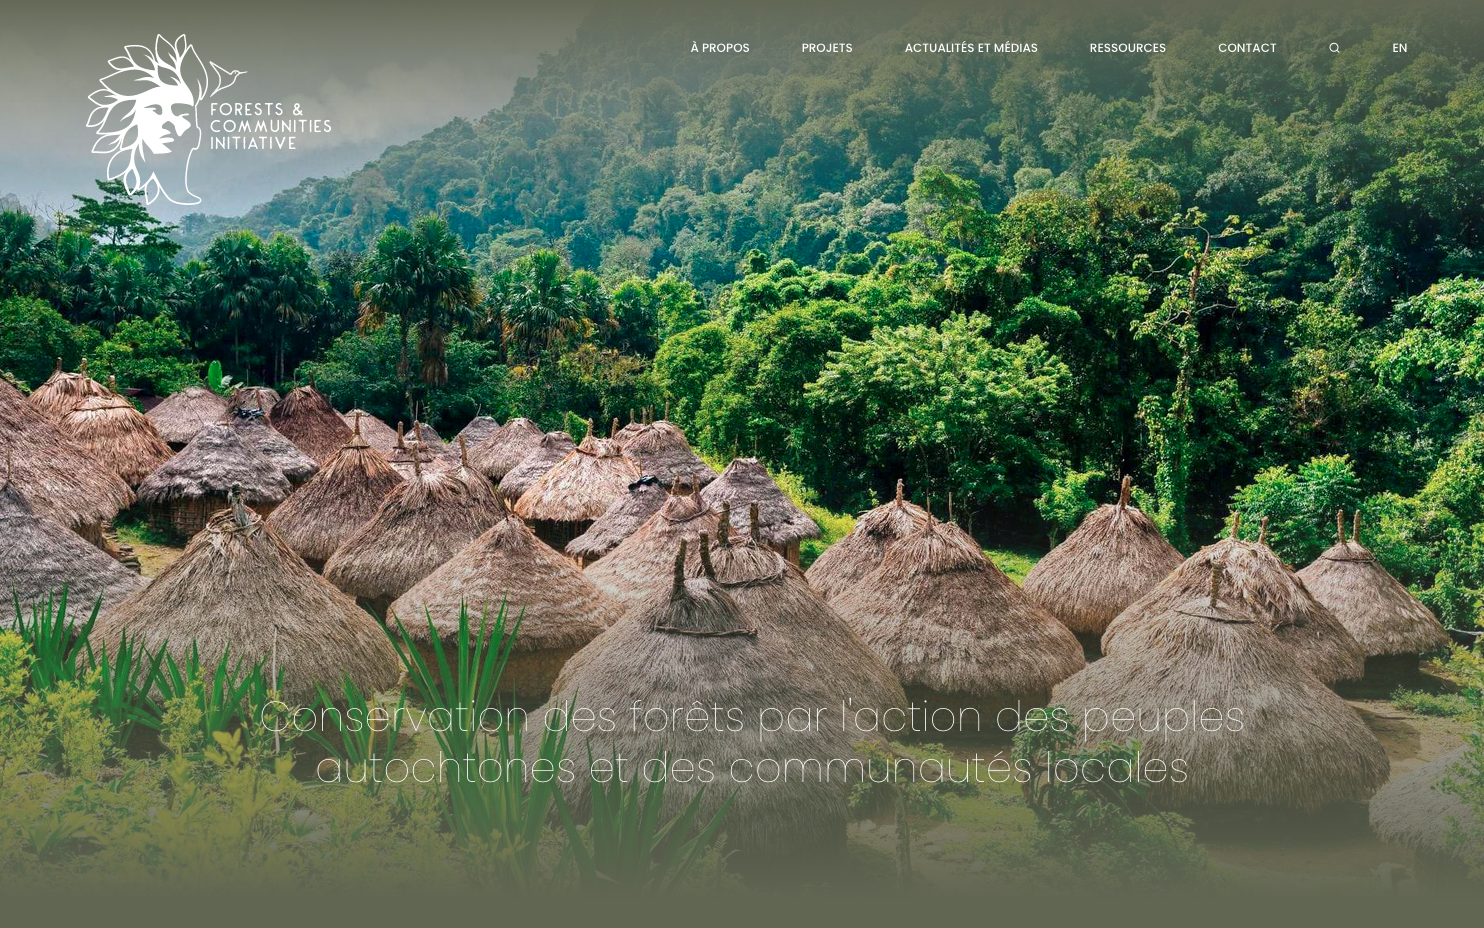 Forests & communities Initiative - Création du site internet